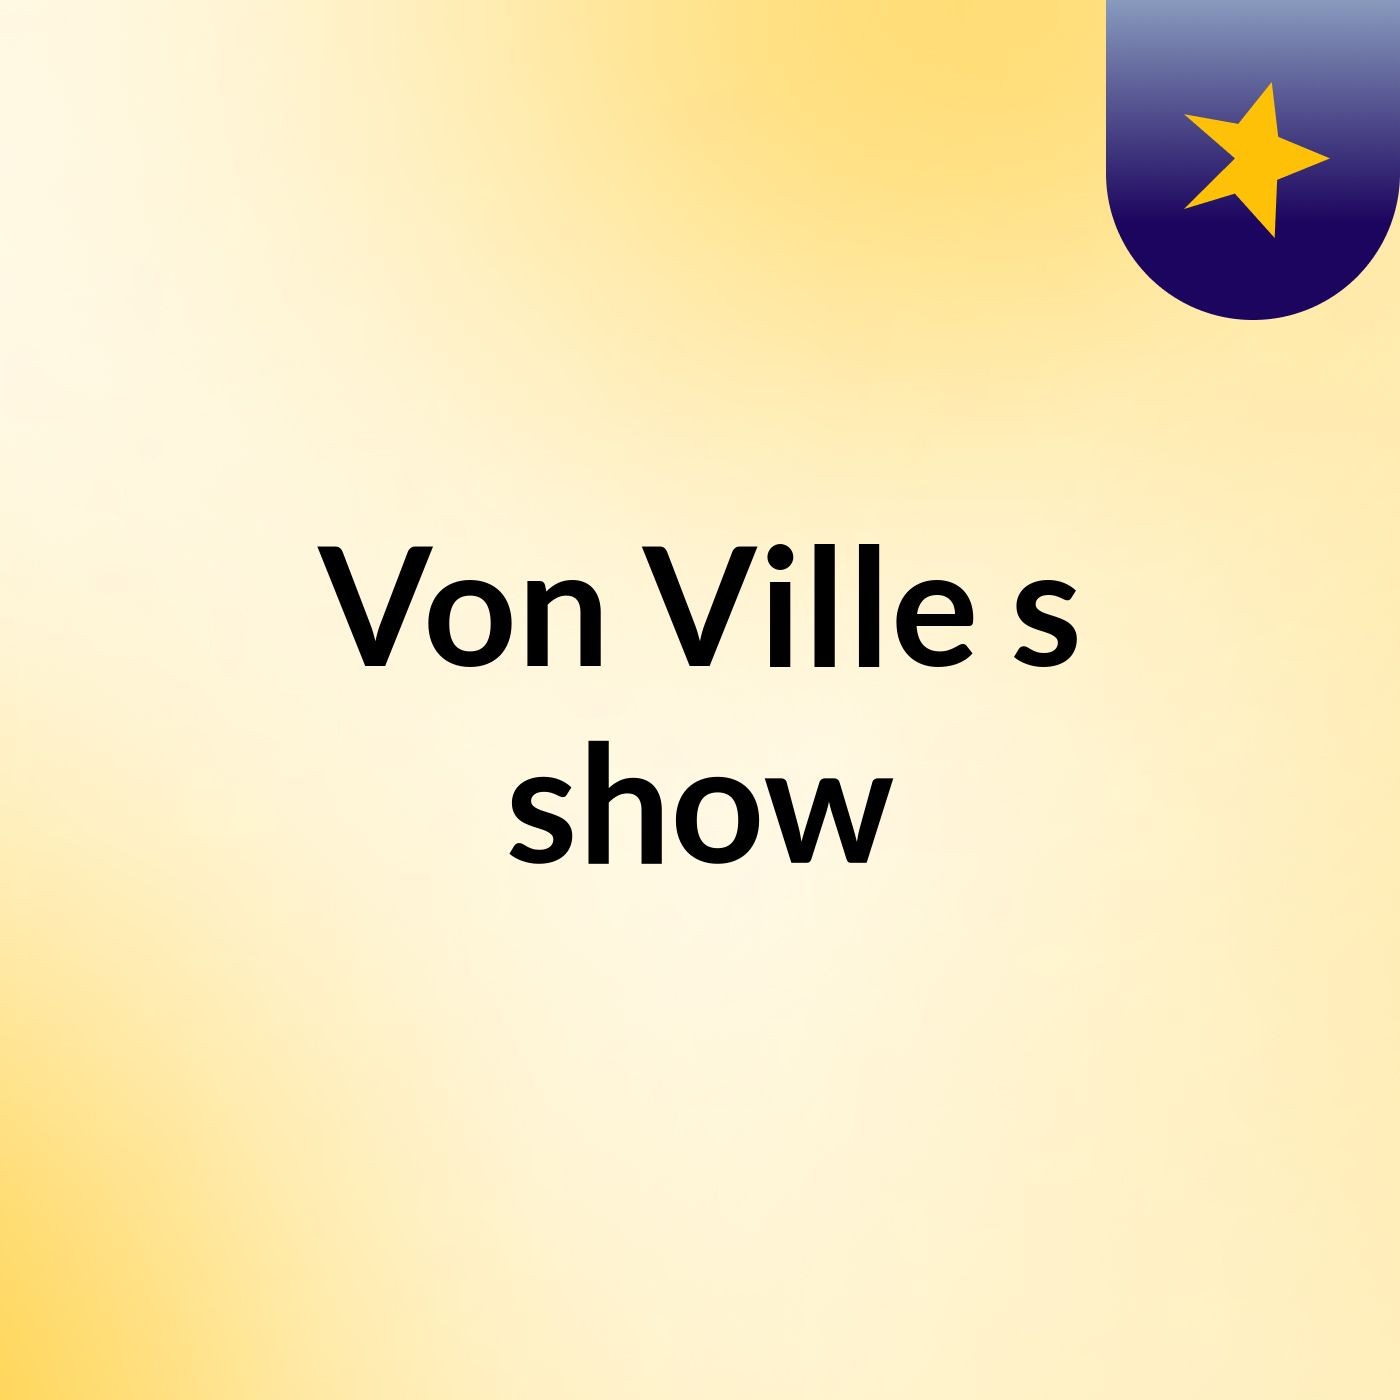 Von Ville's show